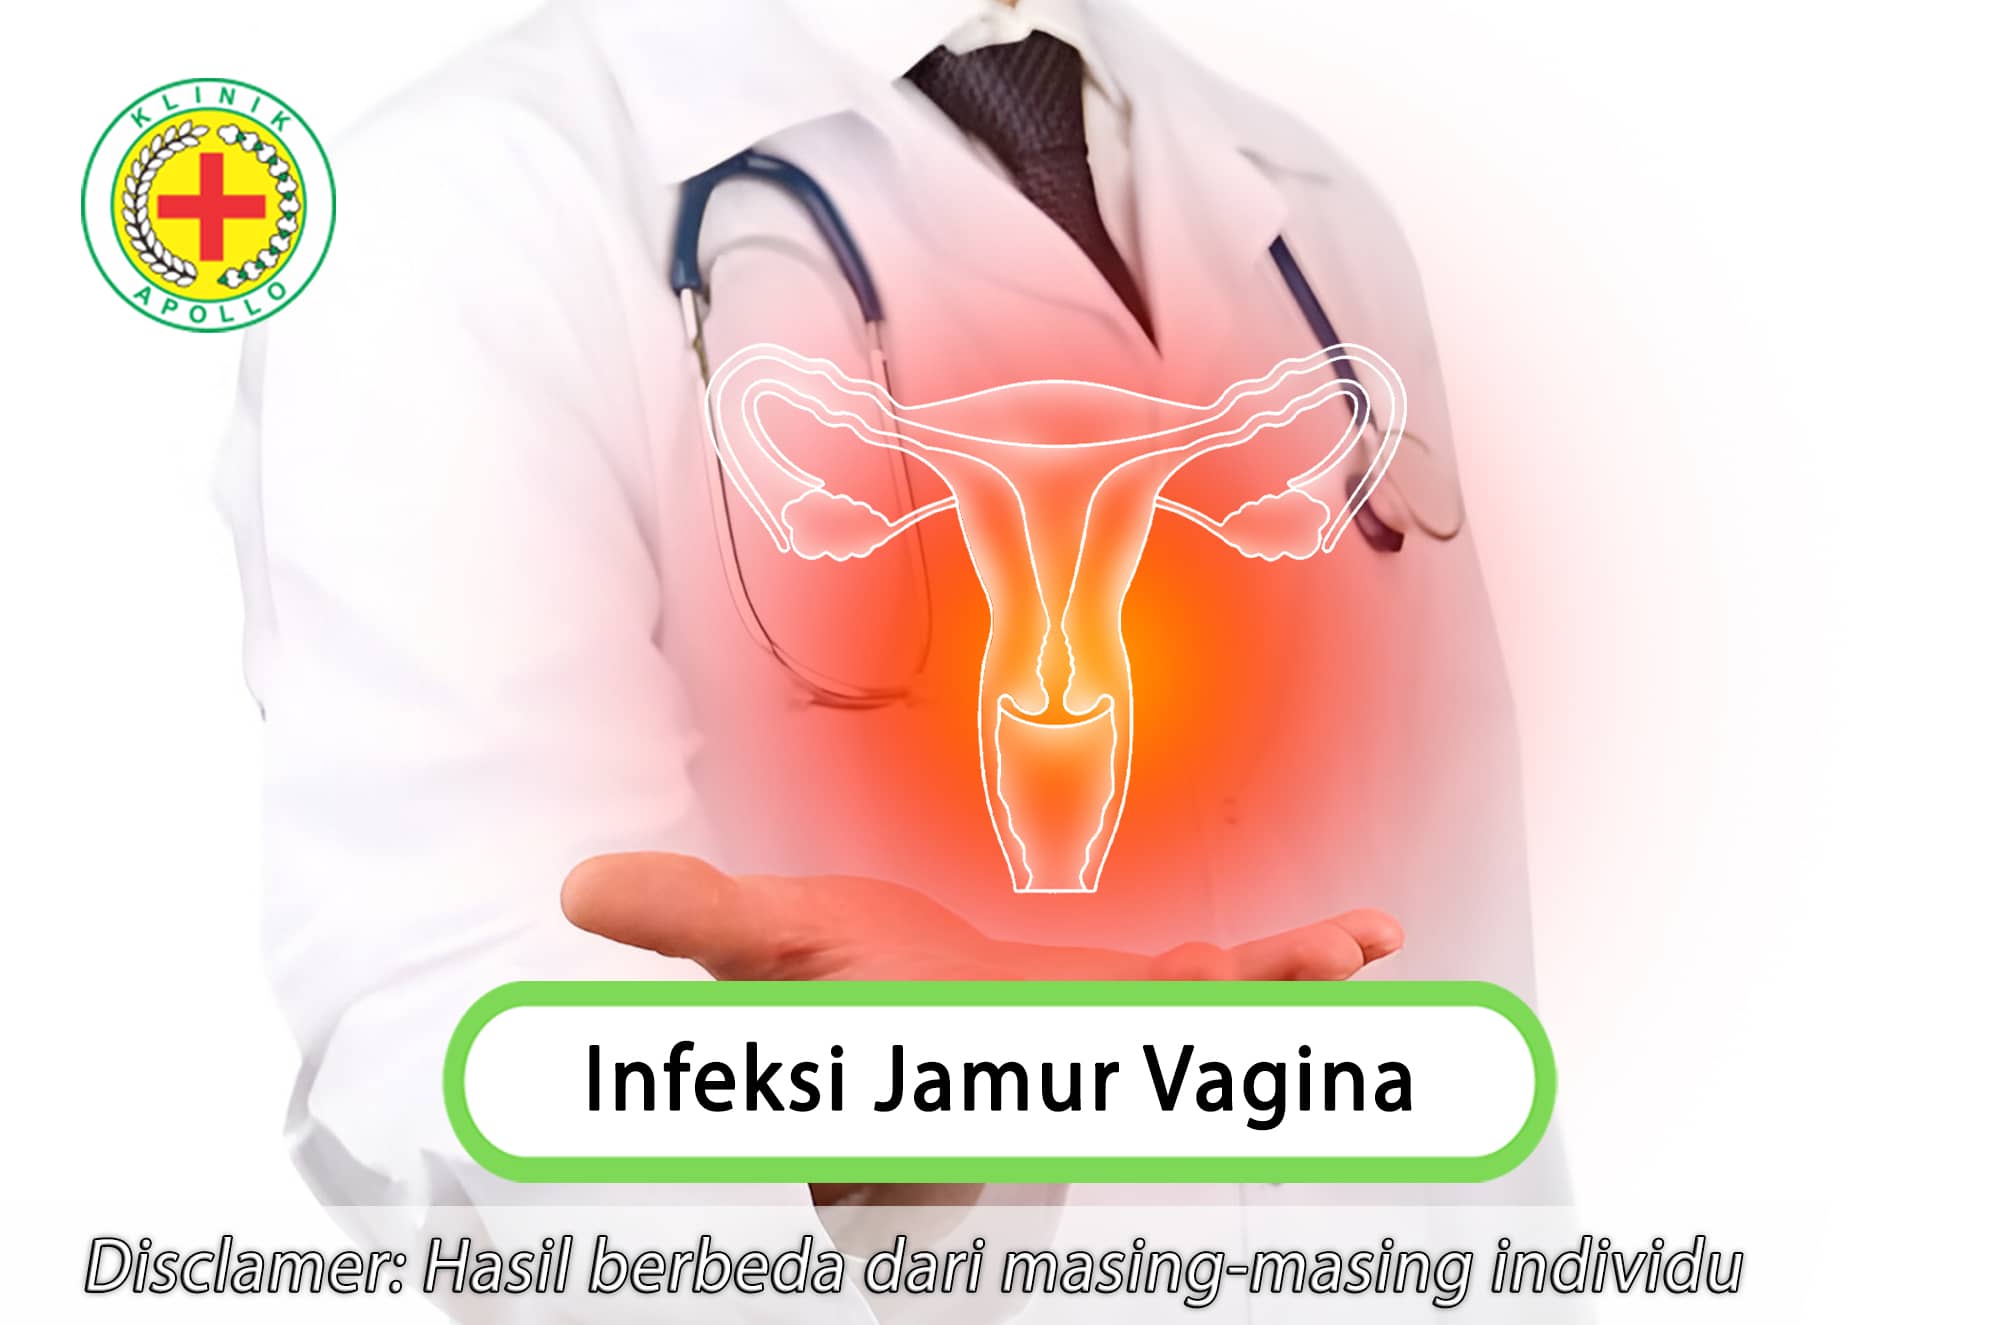 Lakukan penanganan untuk infeksi jamur vagina hanya di Klinik Apollo dengan dokter ahli ginekologi.